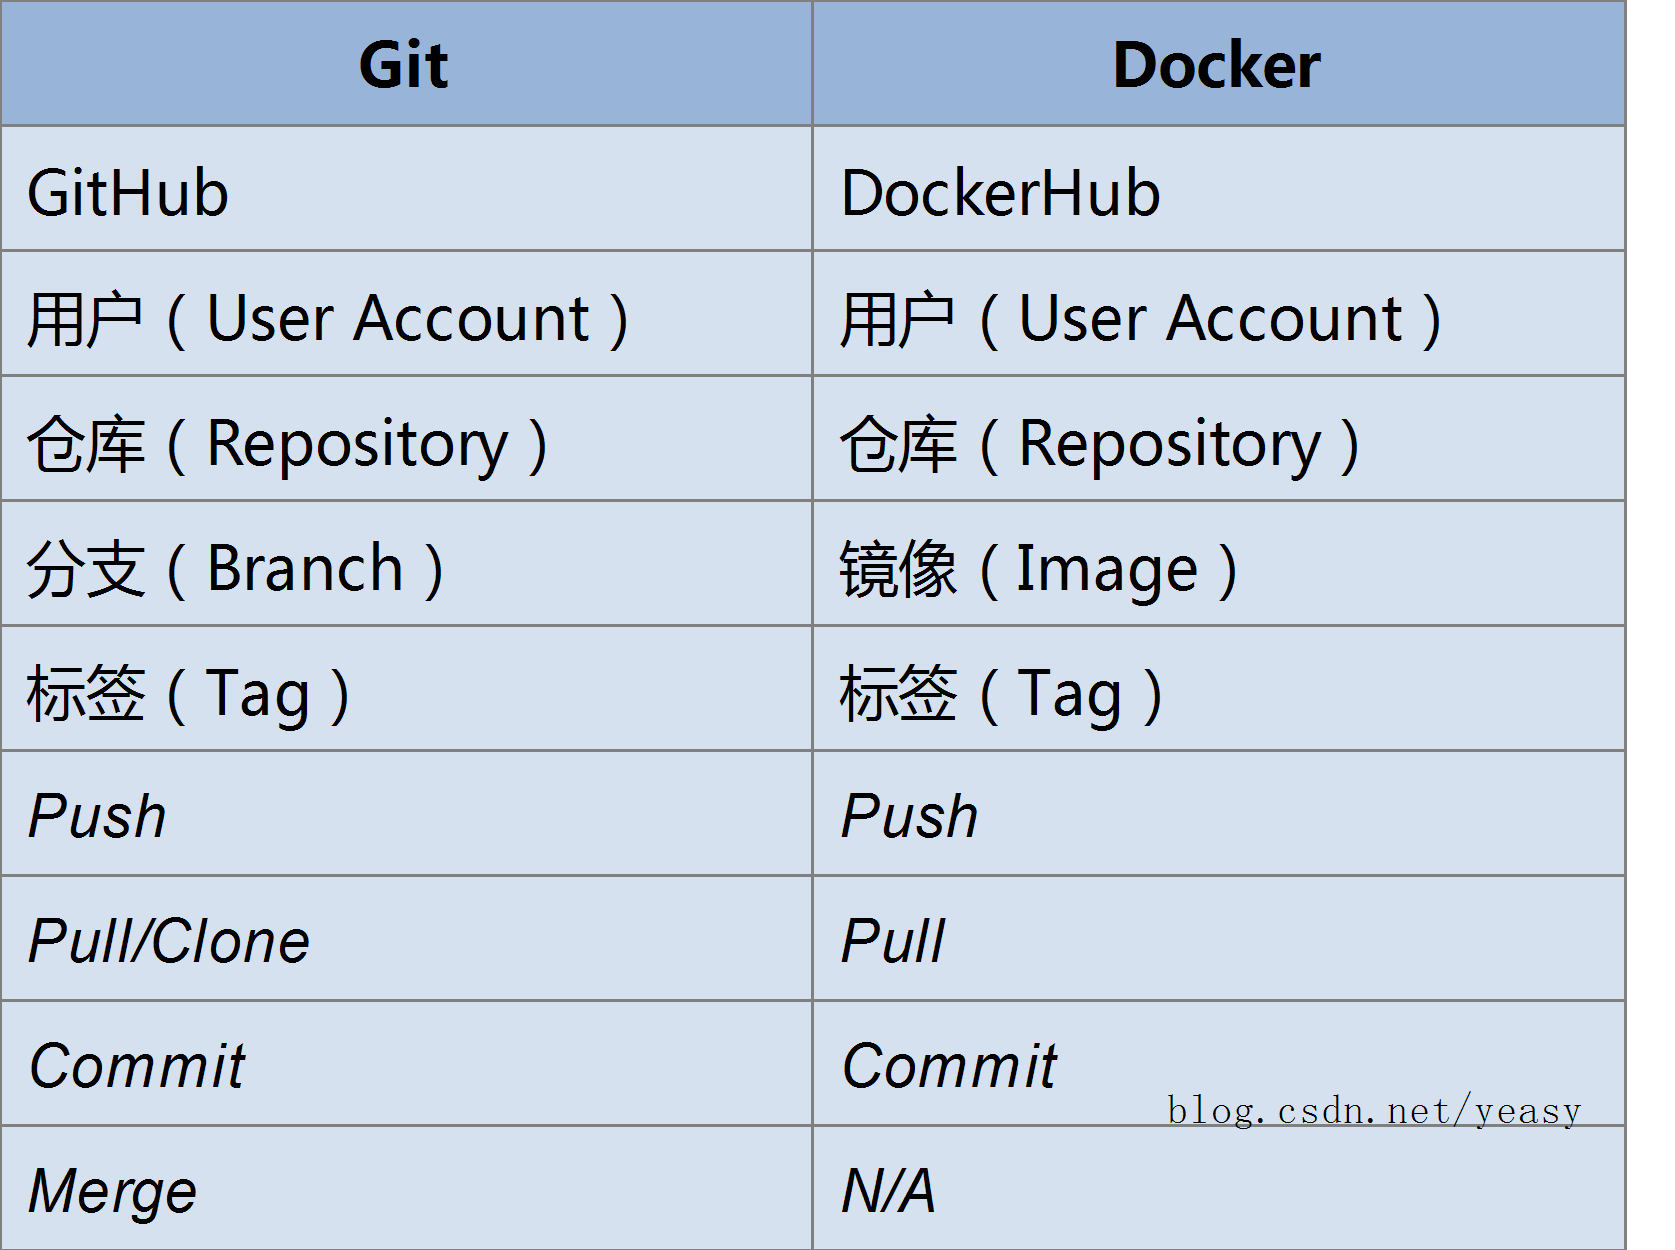 一张图比較 Docker 和 Git：镜像管理设计理念「建议收藏」